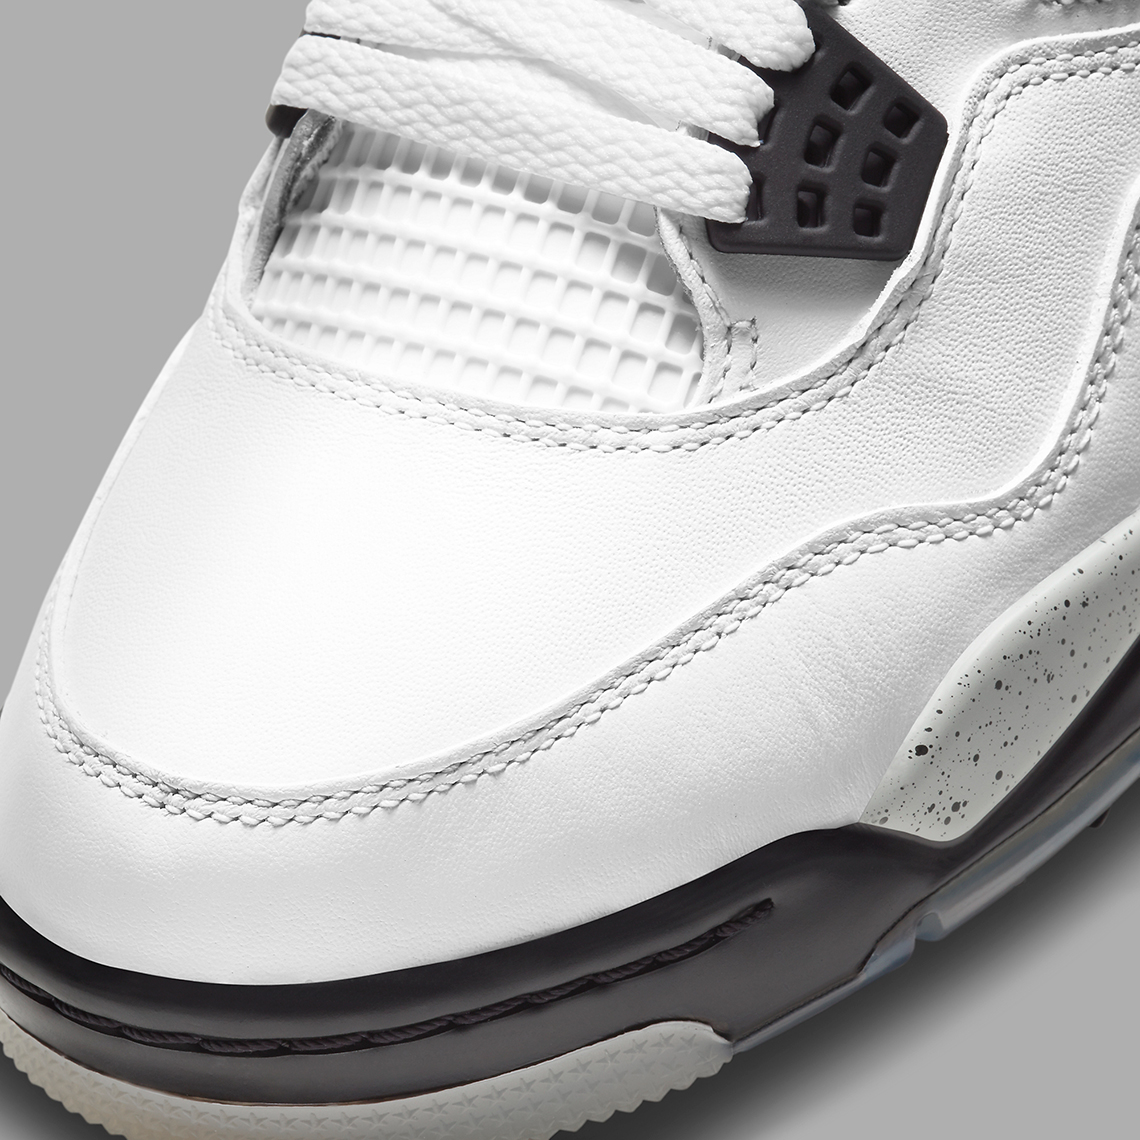 Air Jordan 4 Golf White Cement CU9981 100 6